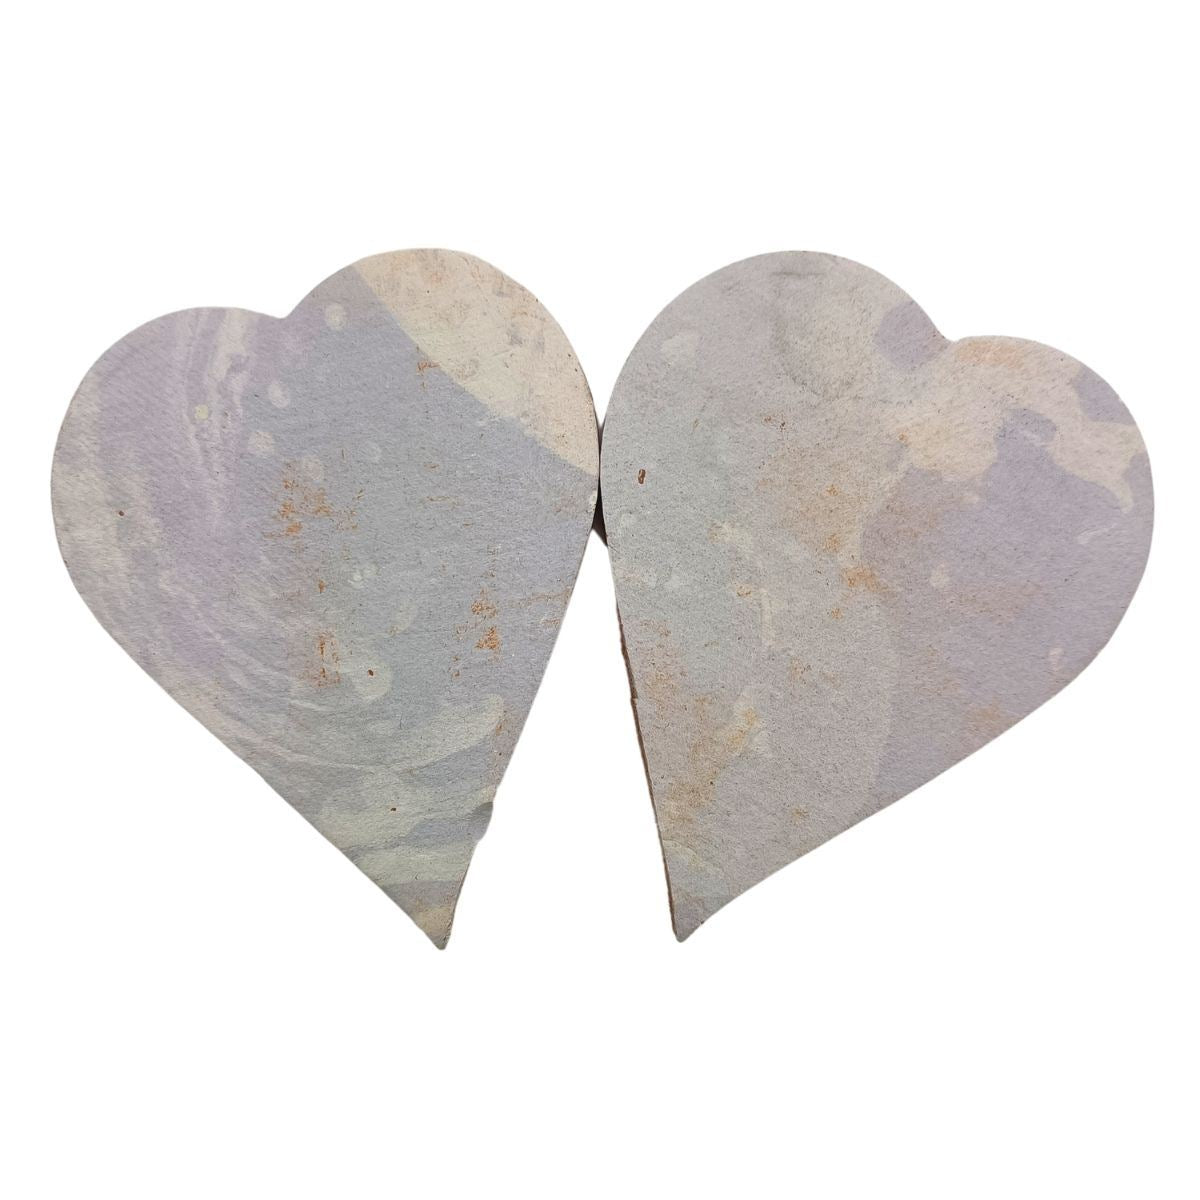 Handmade Shapes - Blush unglazed large Hearts: Pack of 2